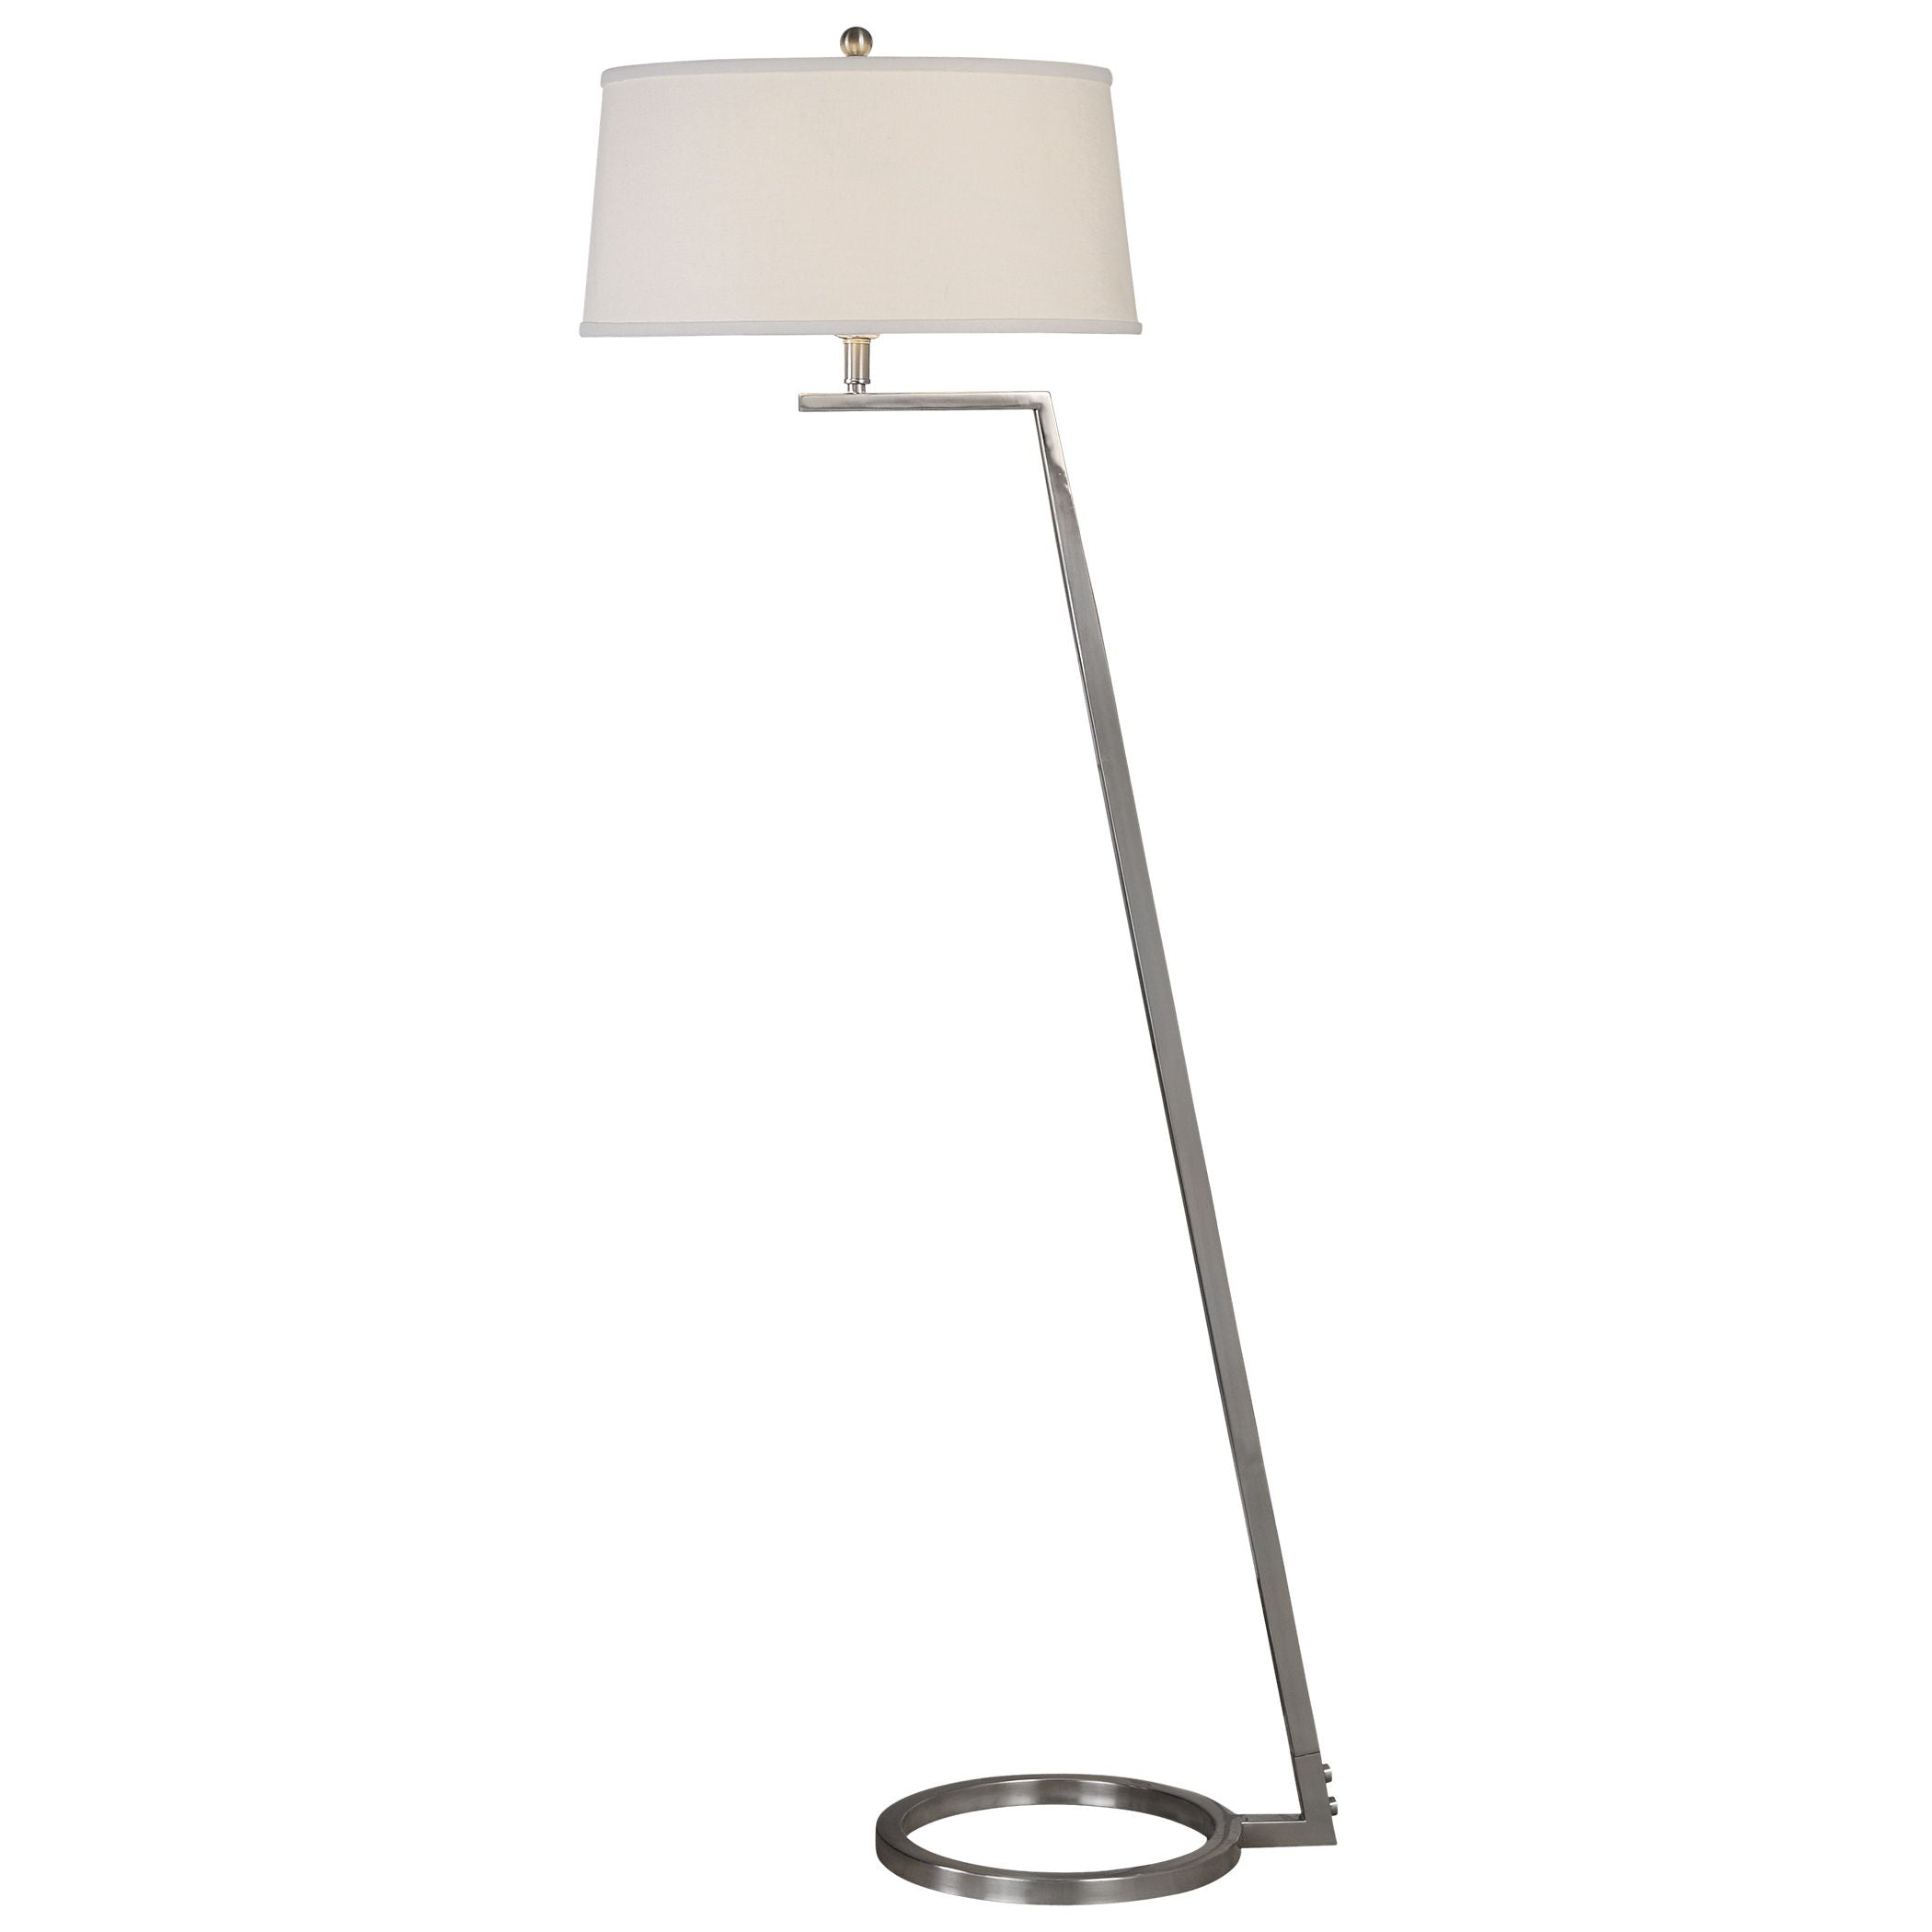 Ordino - Modern Floor Lamp - Nickel